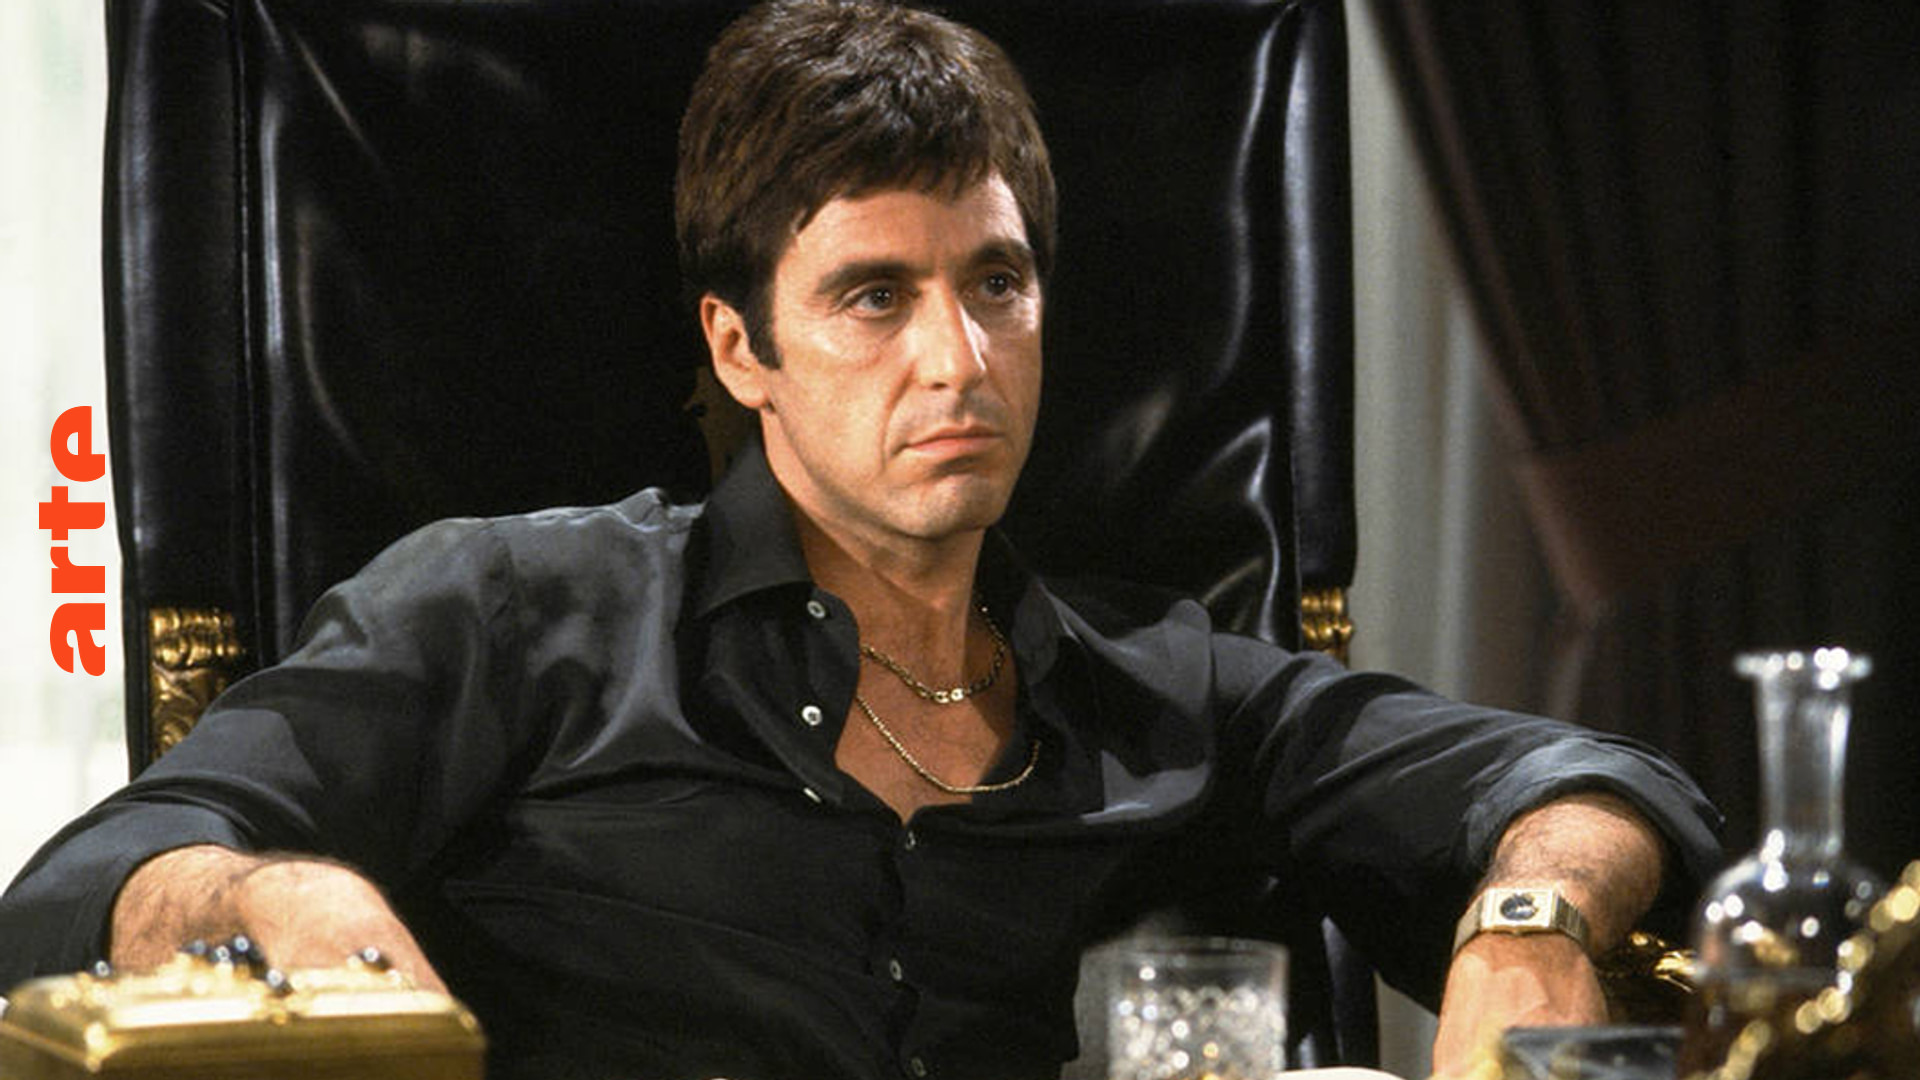 Blow up - Worum geht's bei Al Pacino?